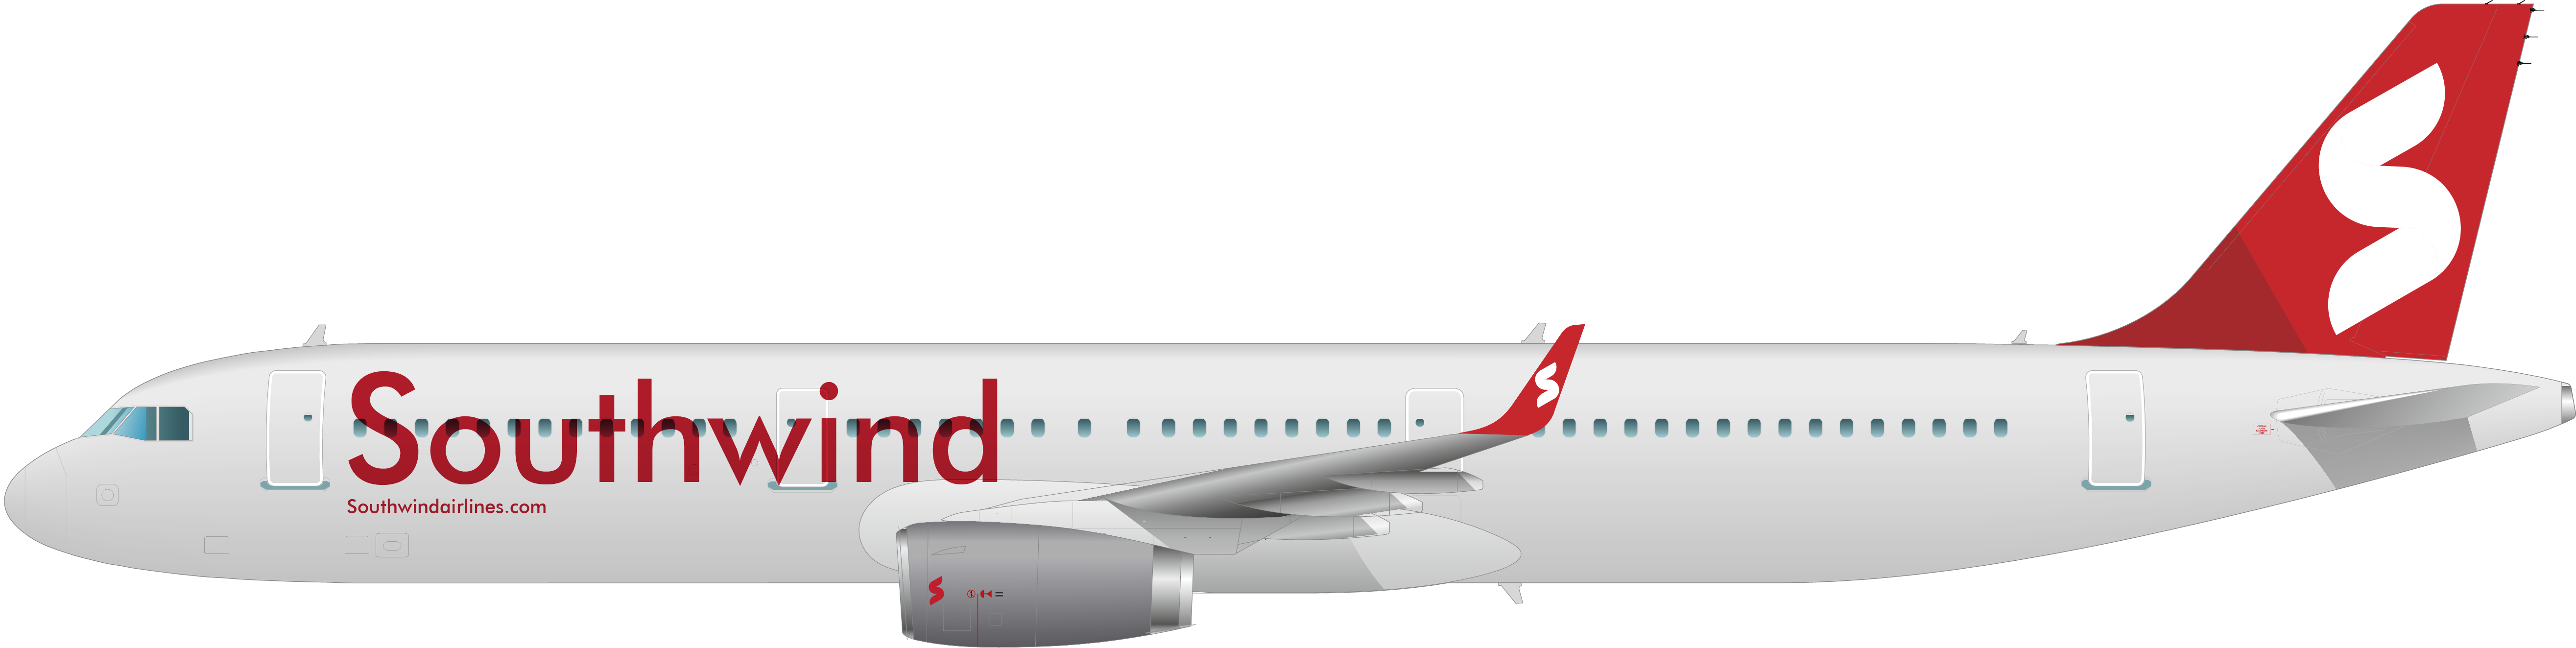 Сайт авиакомпании южный ветер. Airbus a321-200. Southwind Airlines Аэробус а330-200. Airbus 320-200 Air Arabia. Airbus 321-200 салон Space.